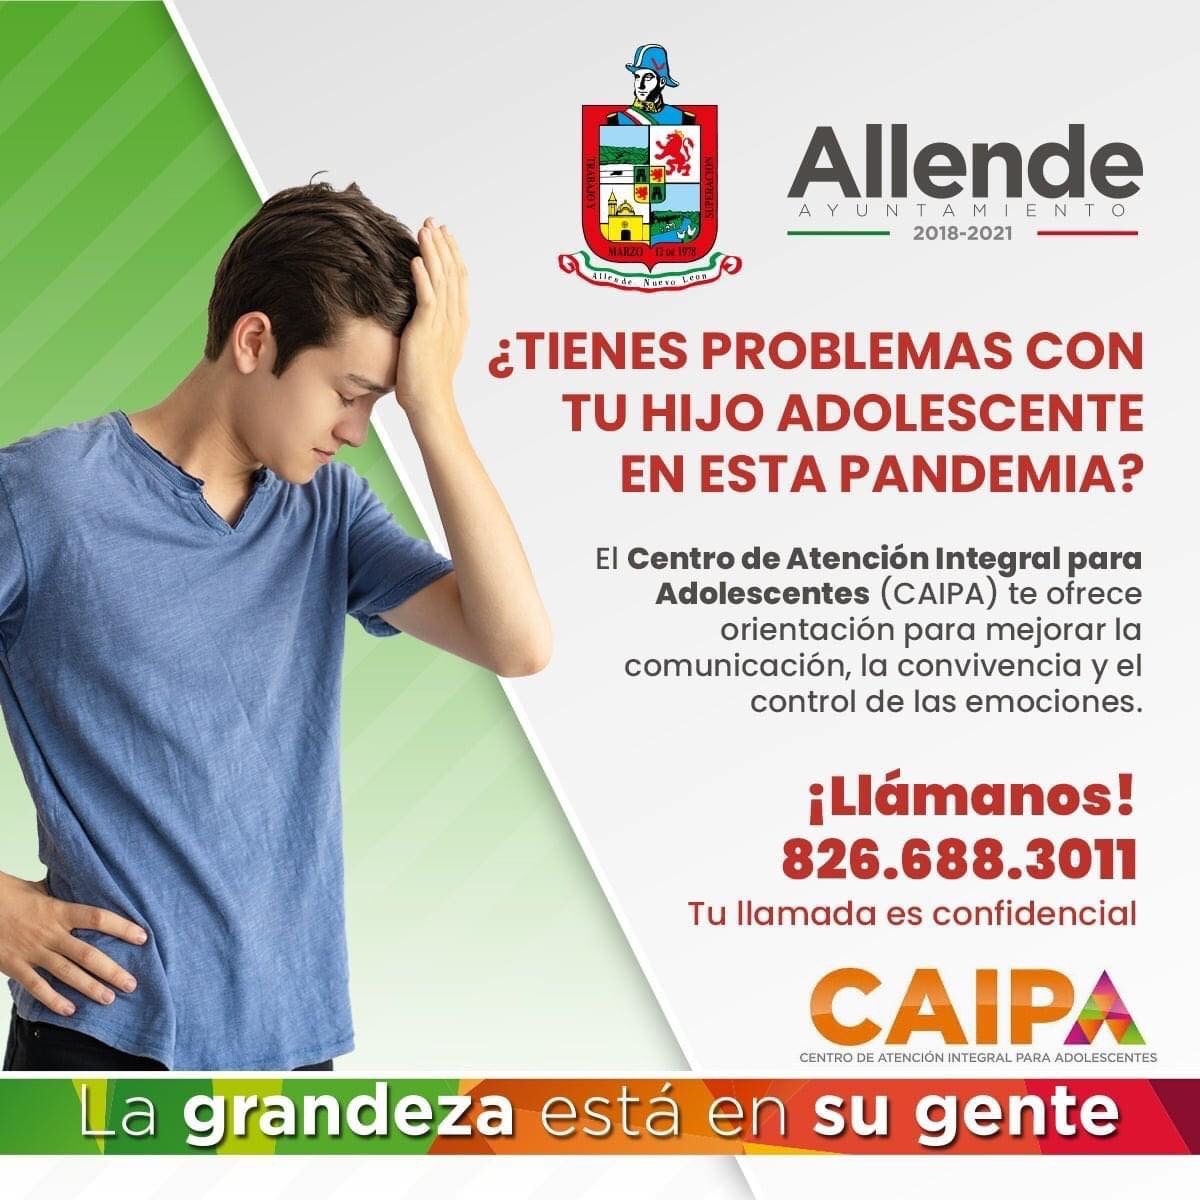 Allende dispone de orientación para tus hijos